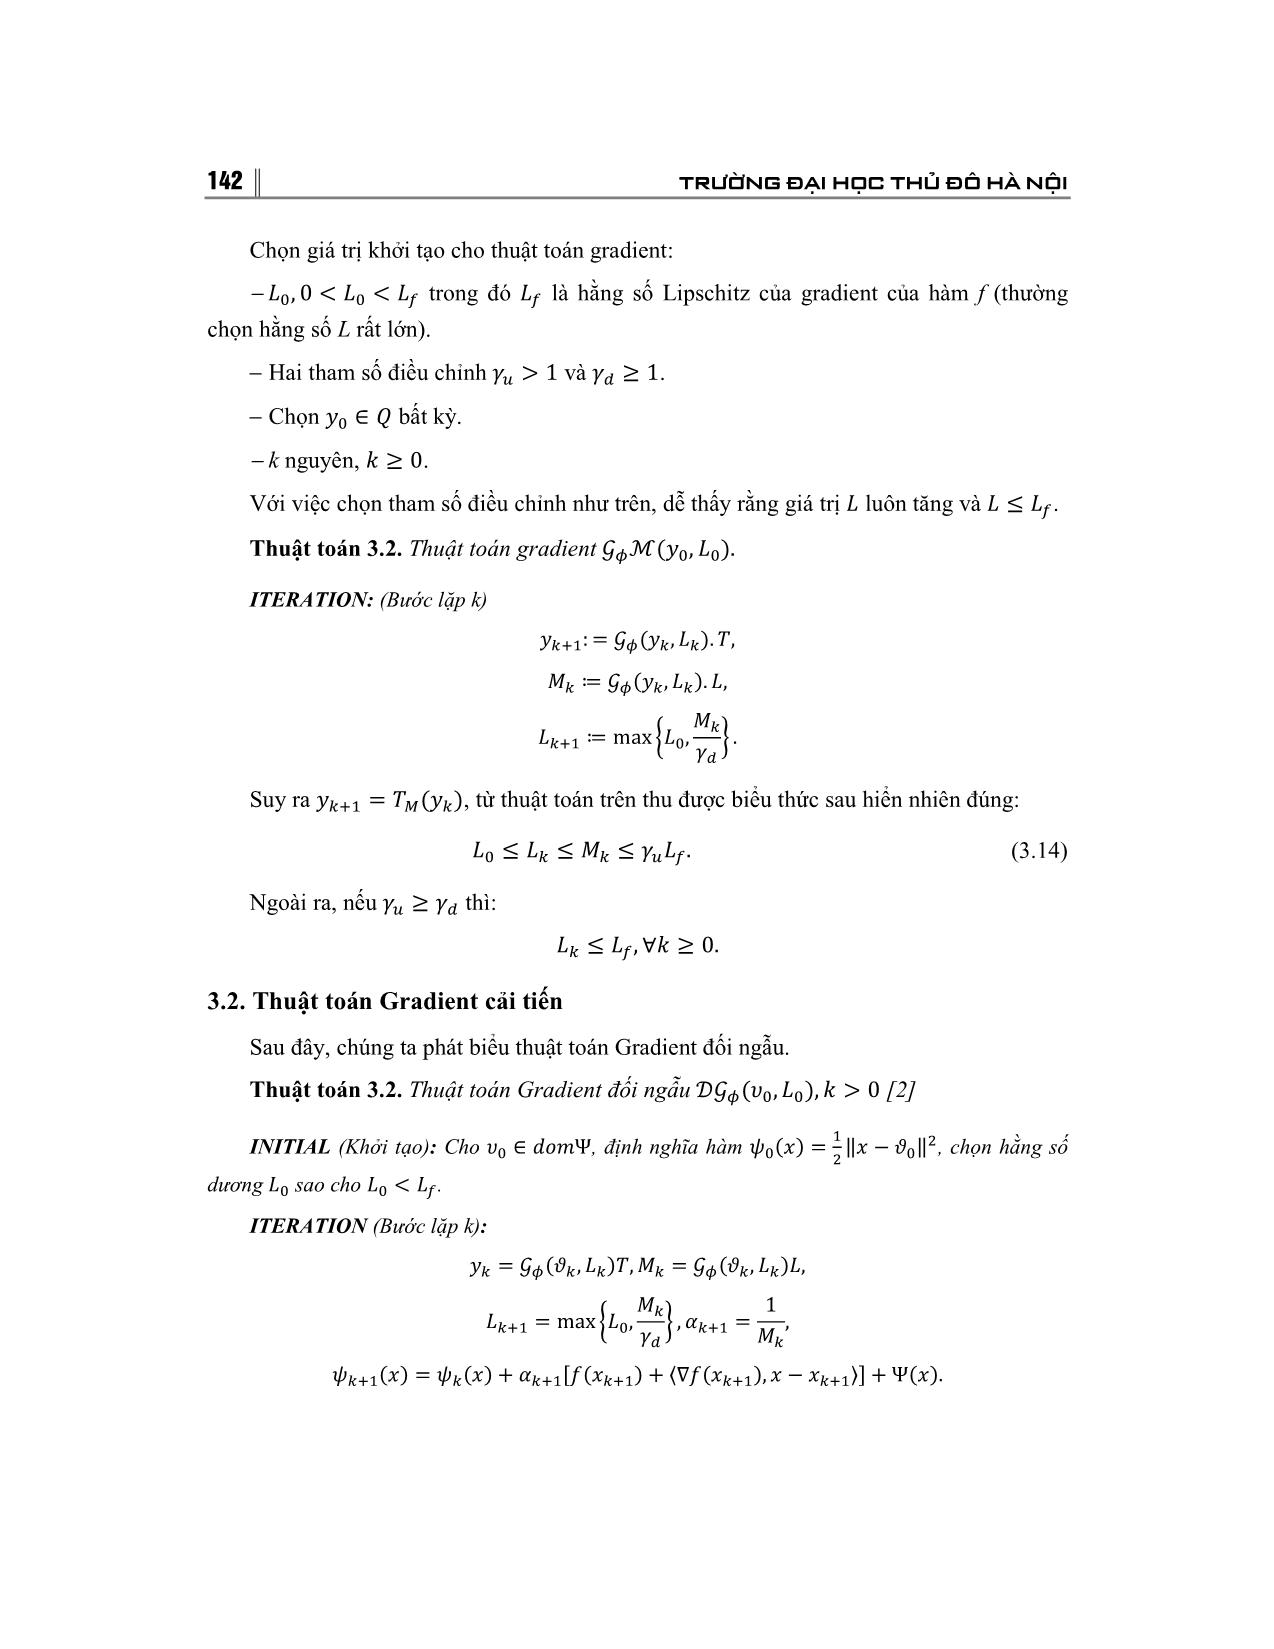 Giải bài toán tối ưu bằng phương pháp Gradient và ứng dụng trang 7